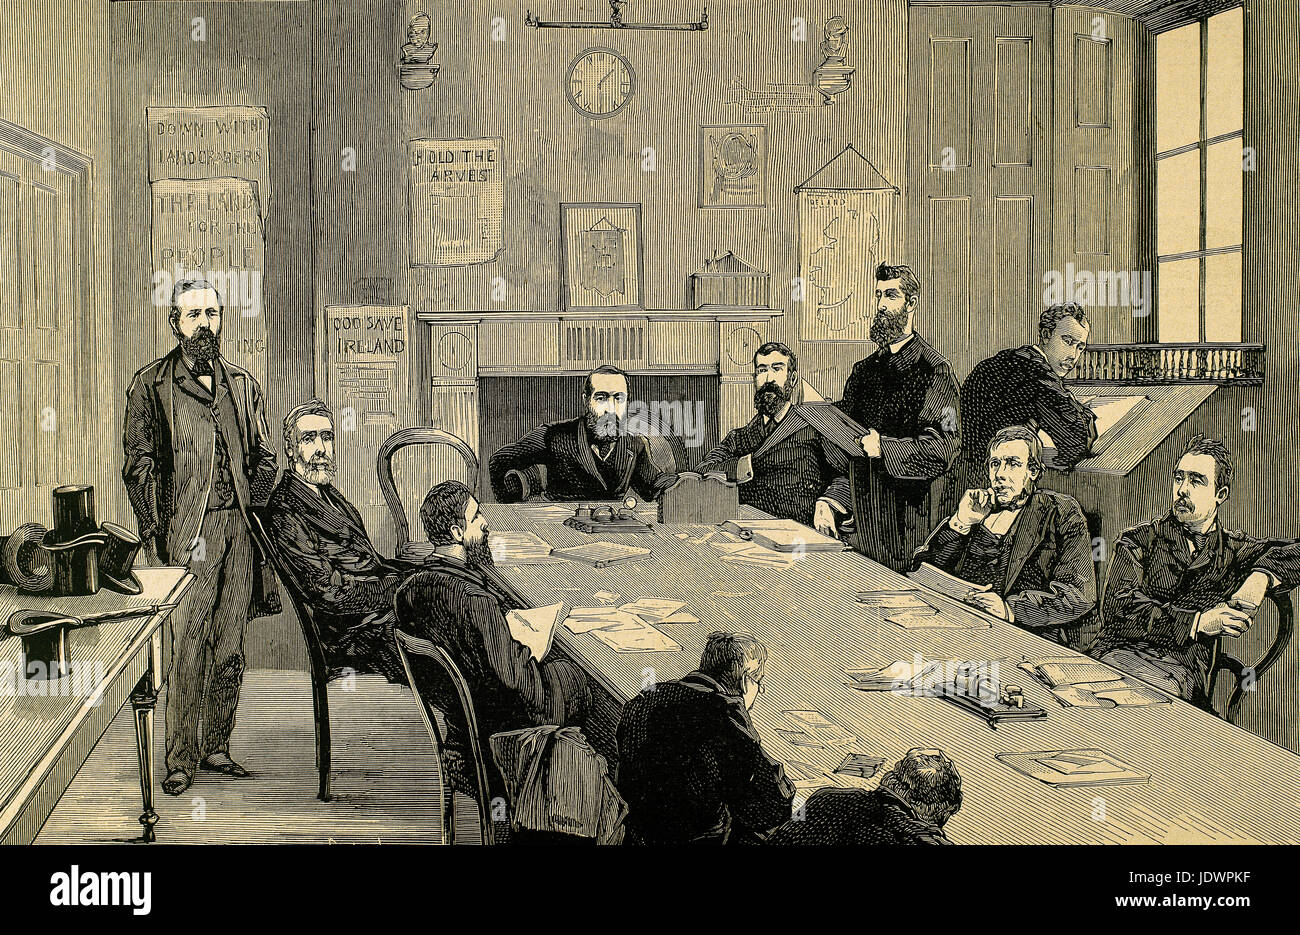 Parnell (1846 – 1891). Irische nationalistische Politiker. Sitzung des Rates der agrarischen Liga unter dem Vorsitz von Parnell in Dublin, Irland, 1880. Kupferstich von Capuz. Stockfoto